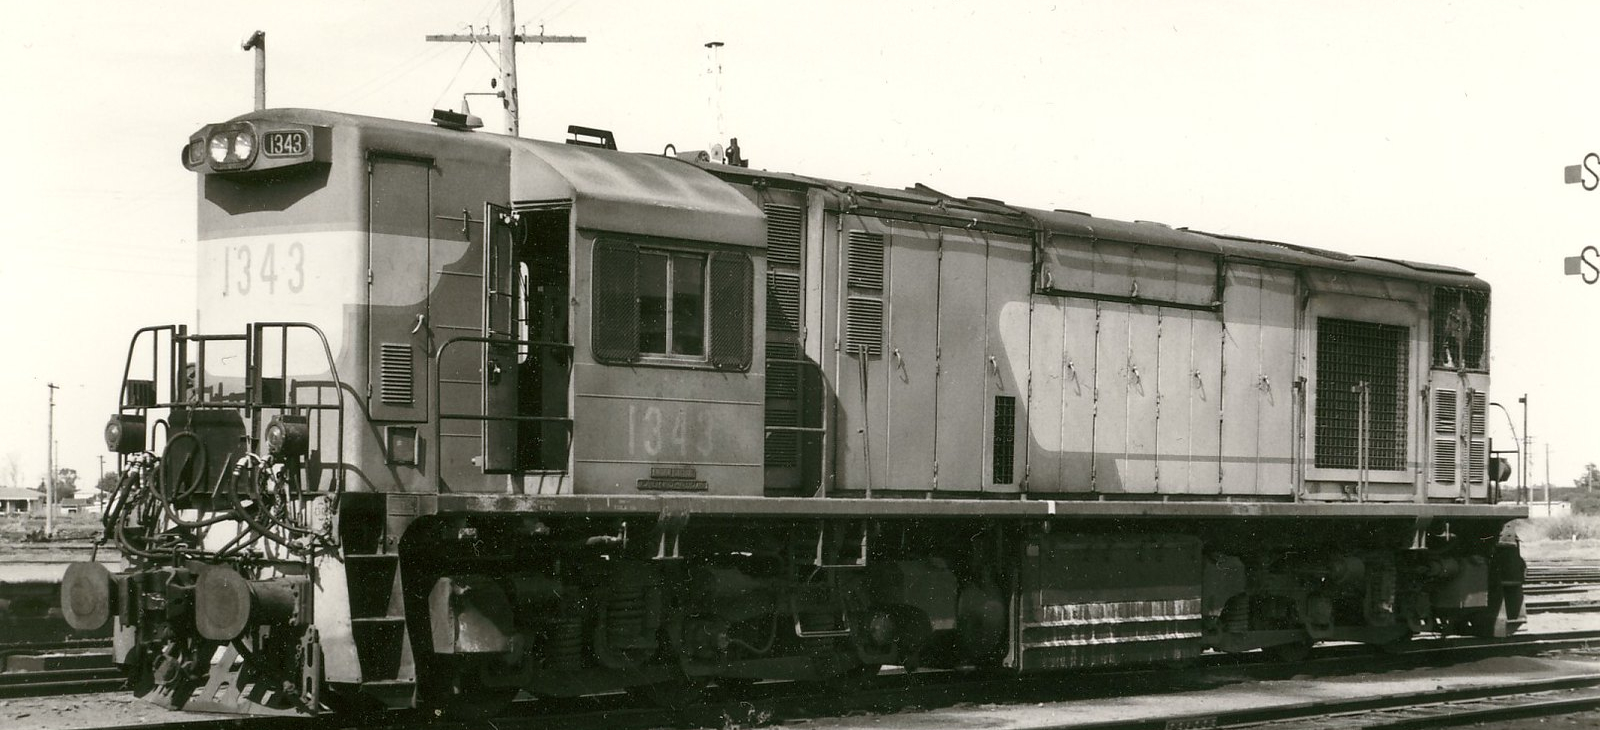 No. 1343 in June 1978 at Rockhampton, Queensland